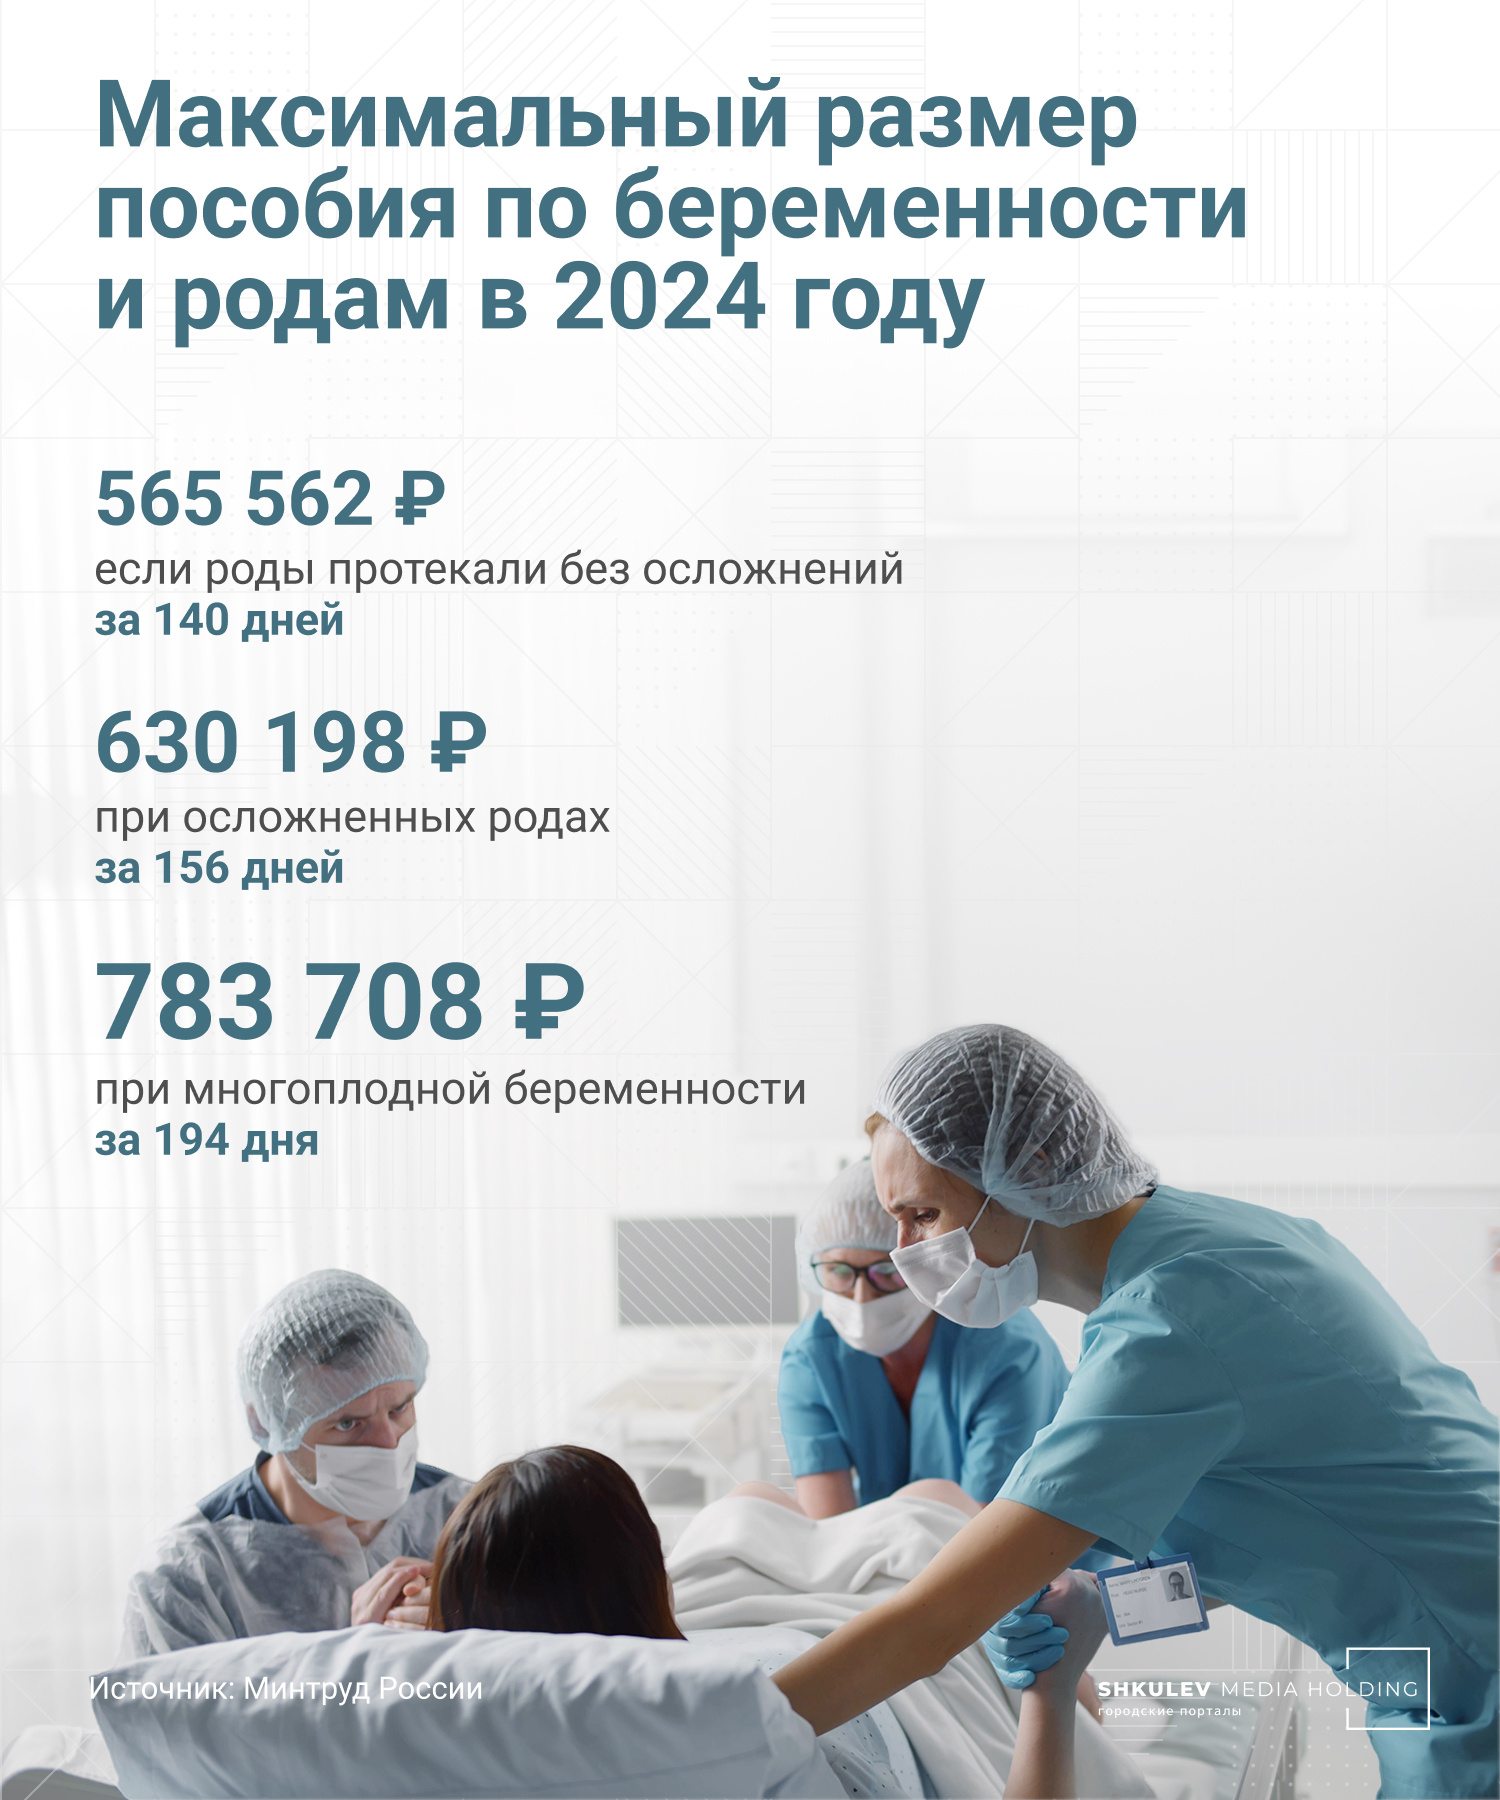 Пособие по беременности и родам в 2024 году: сколько заплатят за декрет - 5  октября 2023 - ФОНТАНКА.ру